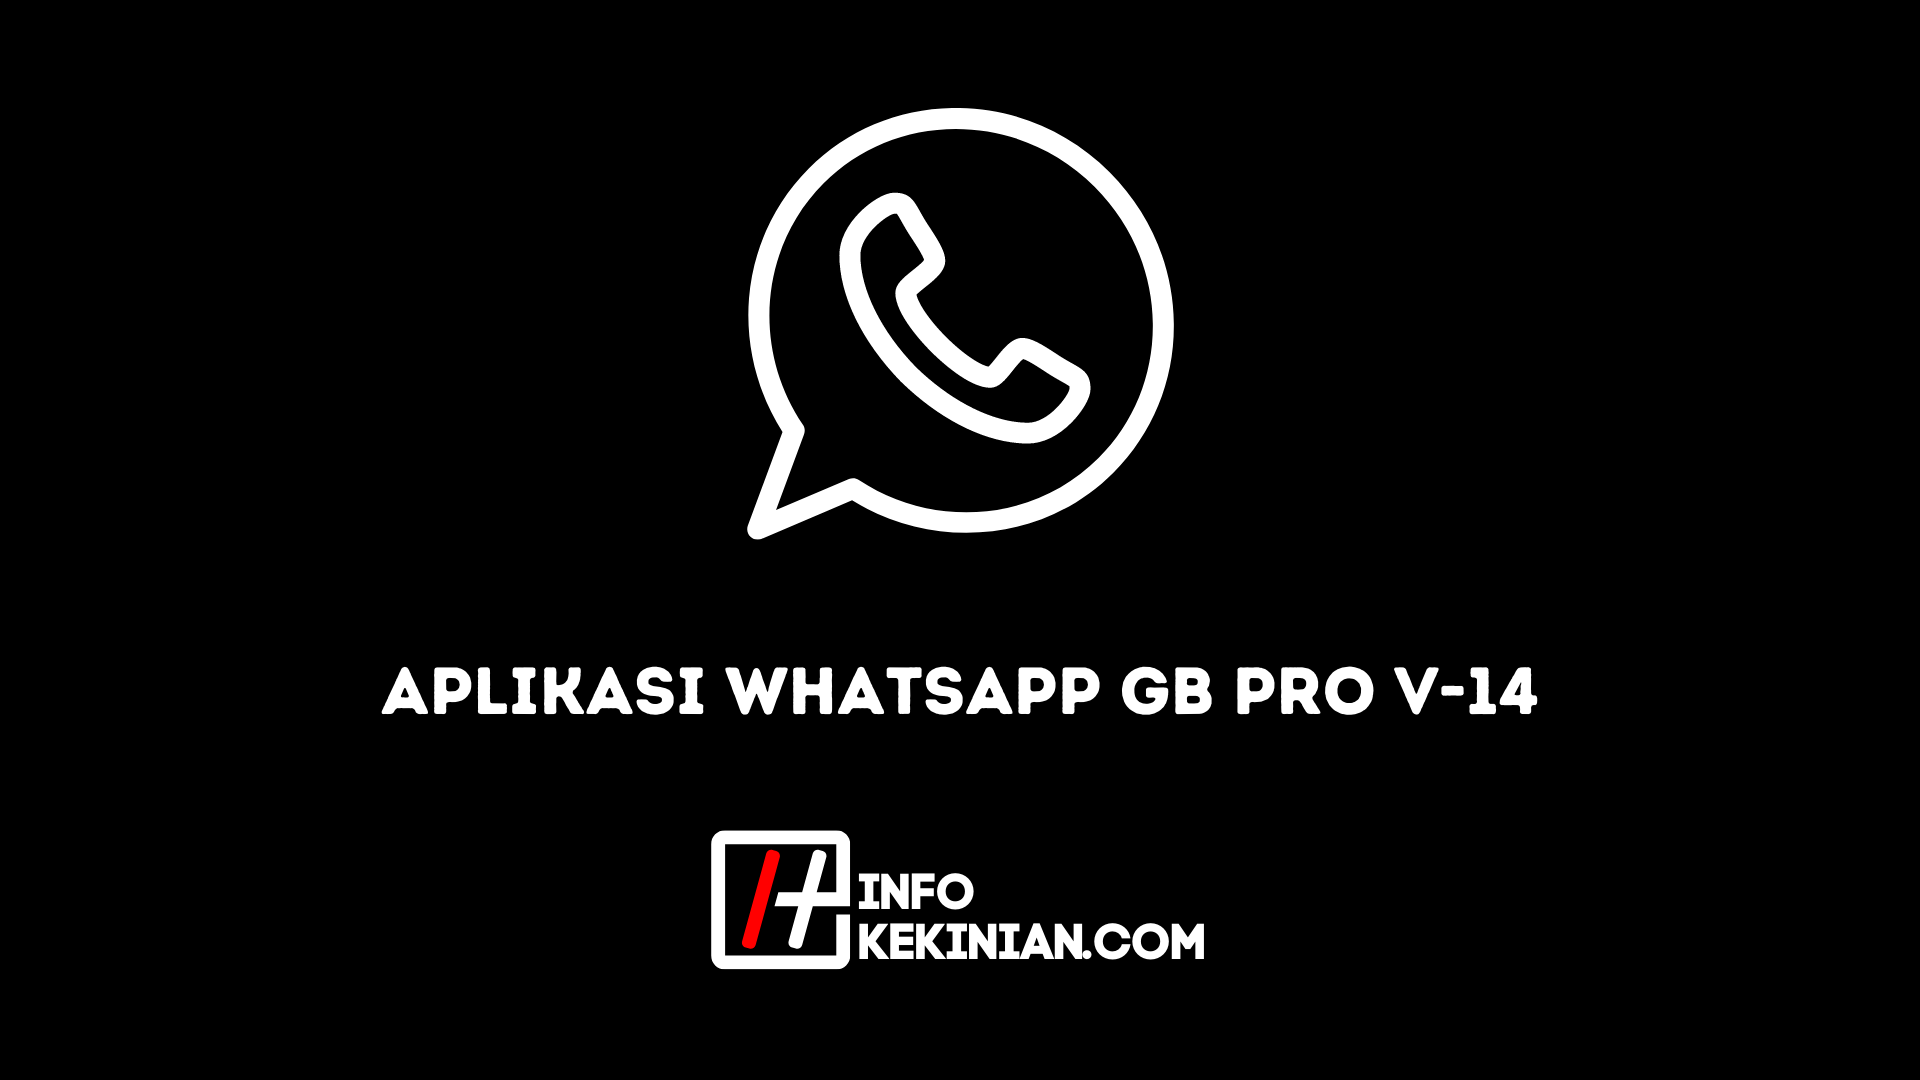 La aplicación WhatsApp Gb Pro V 14, veamos